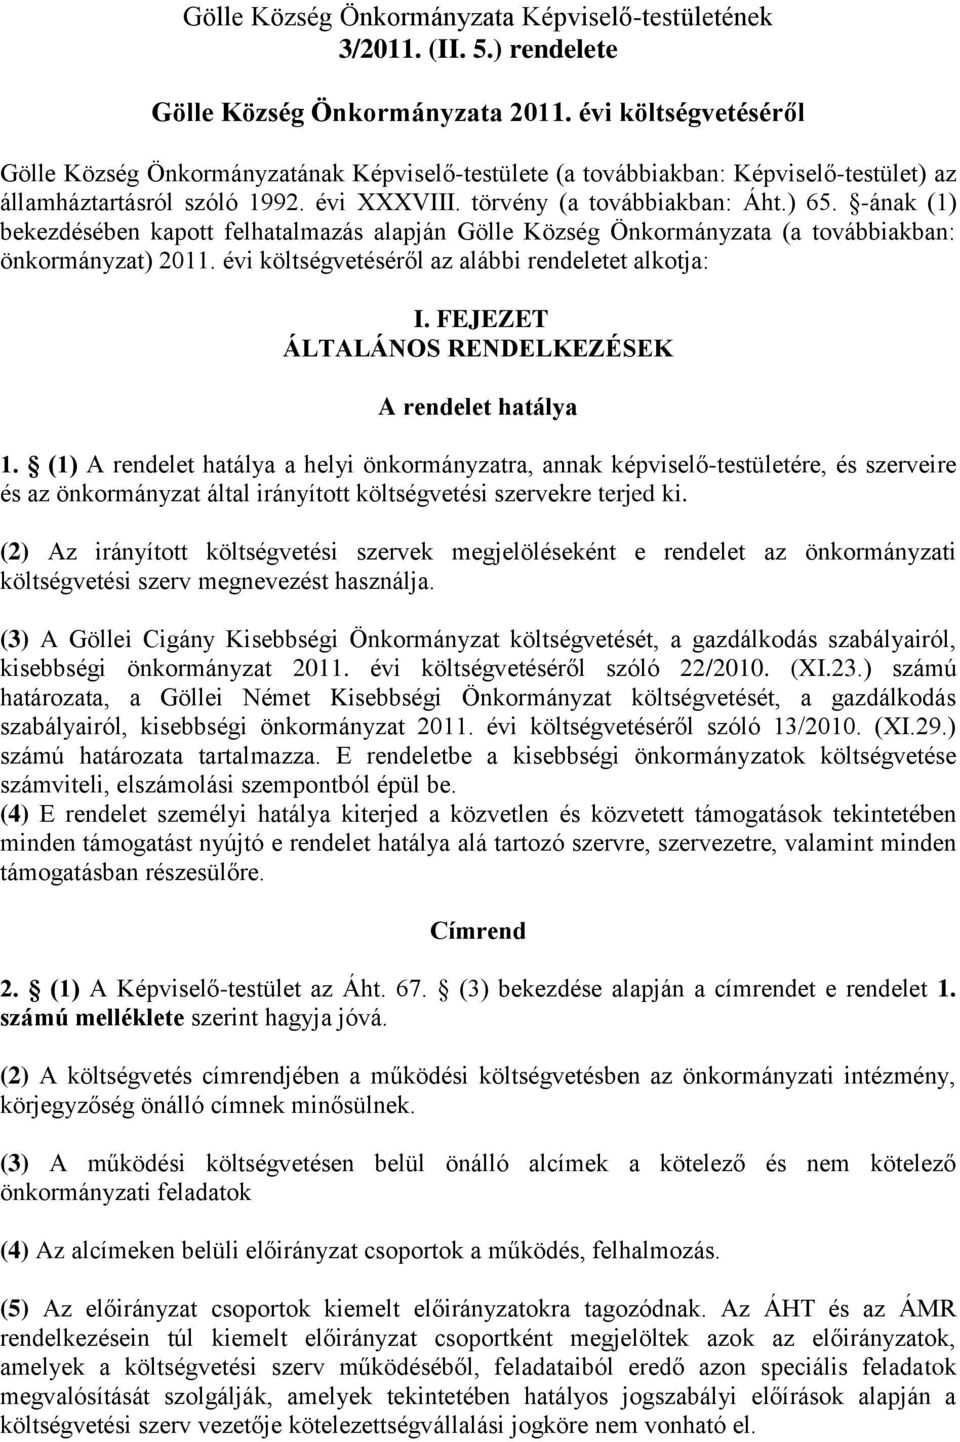 -ának (1) bekezdésében kapott felhatalmazás alapján Gölle Község Önkormányzata (a továbbiakban: önkormányzat) 2011. évi költségvetéséről az alábbi rendeletet alkotja: I.